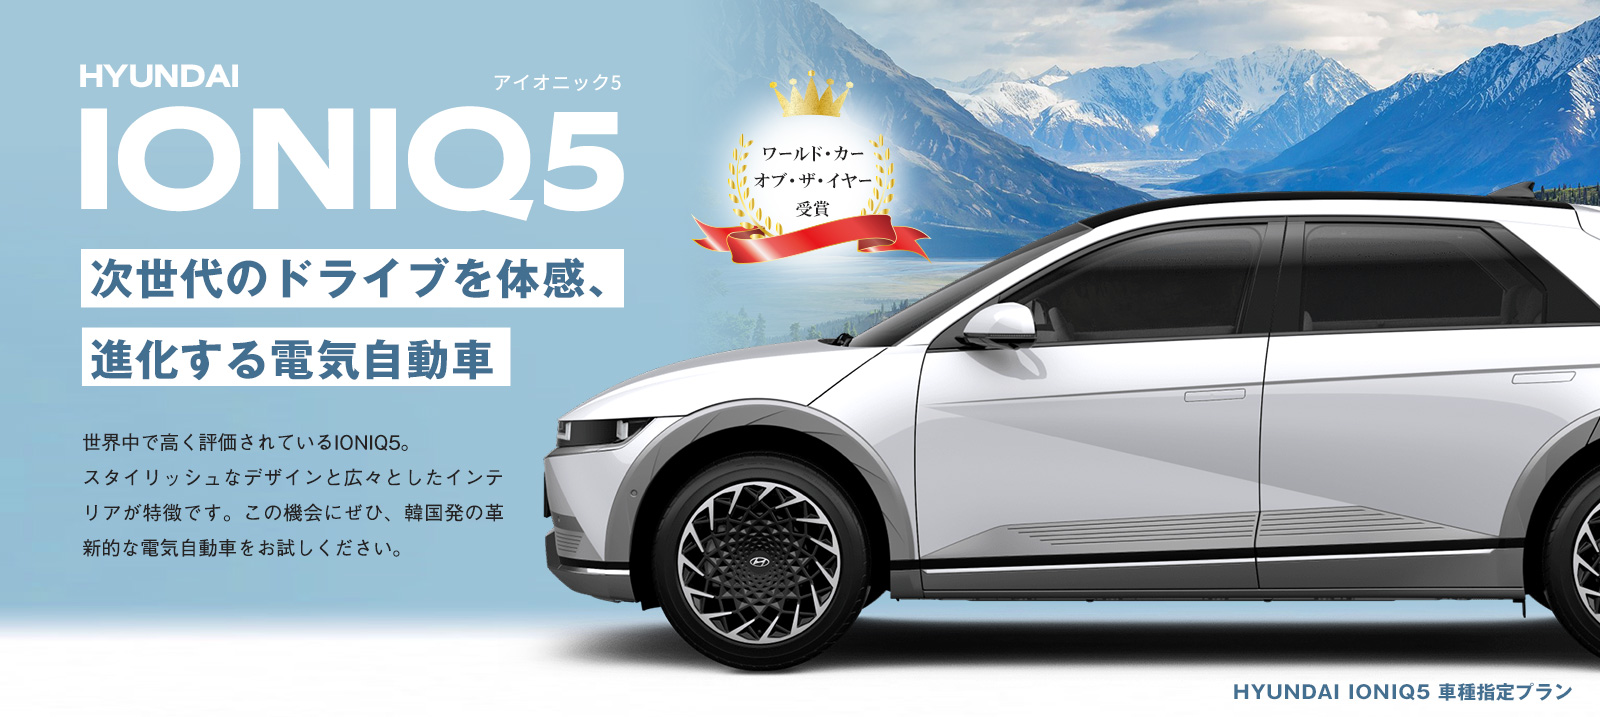 スポーツカー並みの走行性能電気自動車 IONIQ5(アイオニック5)